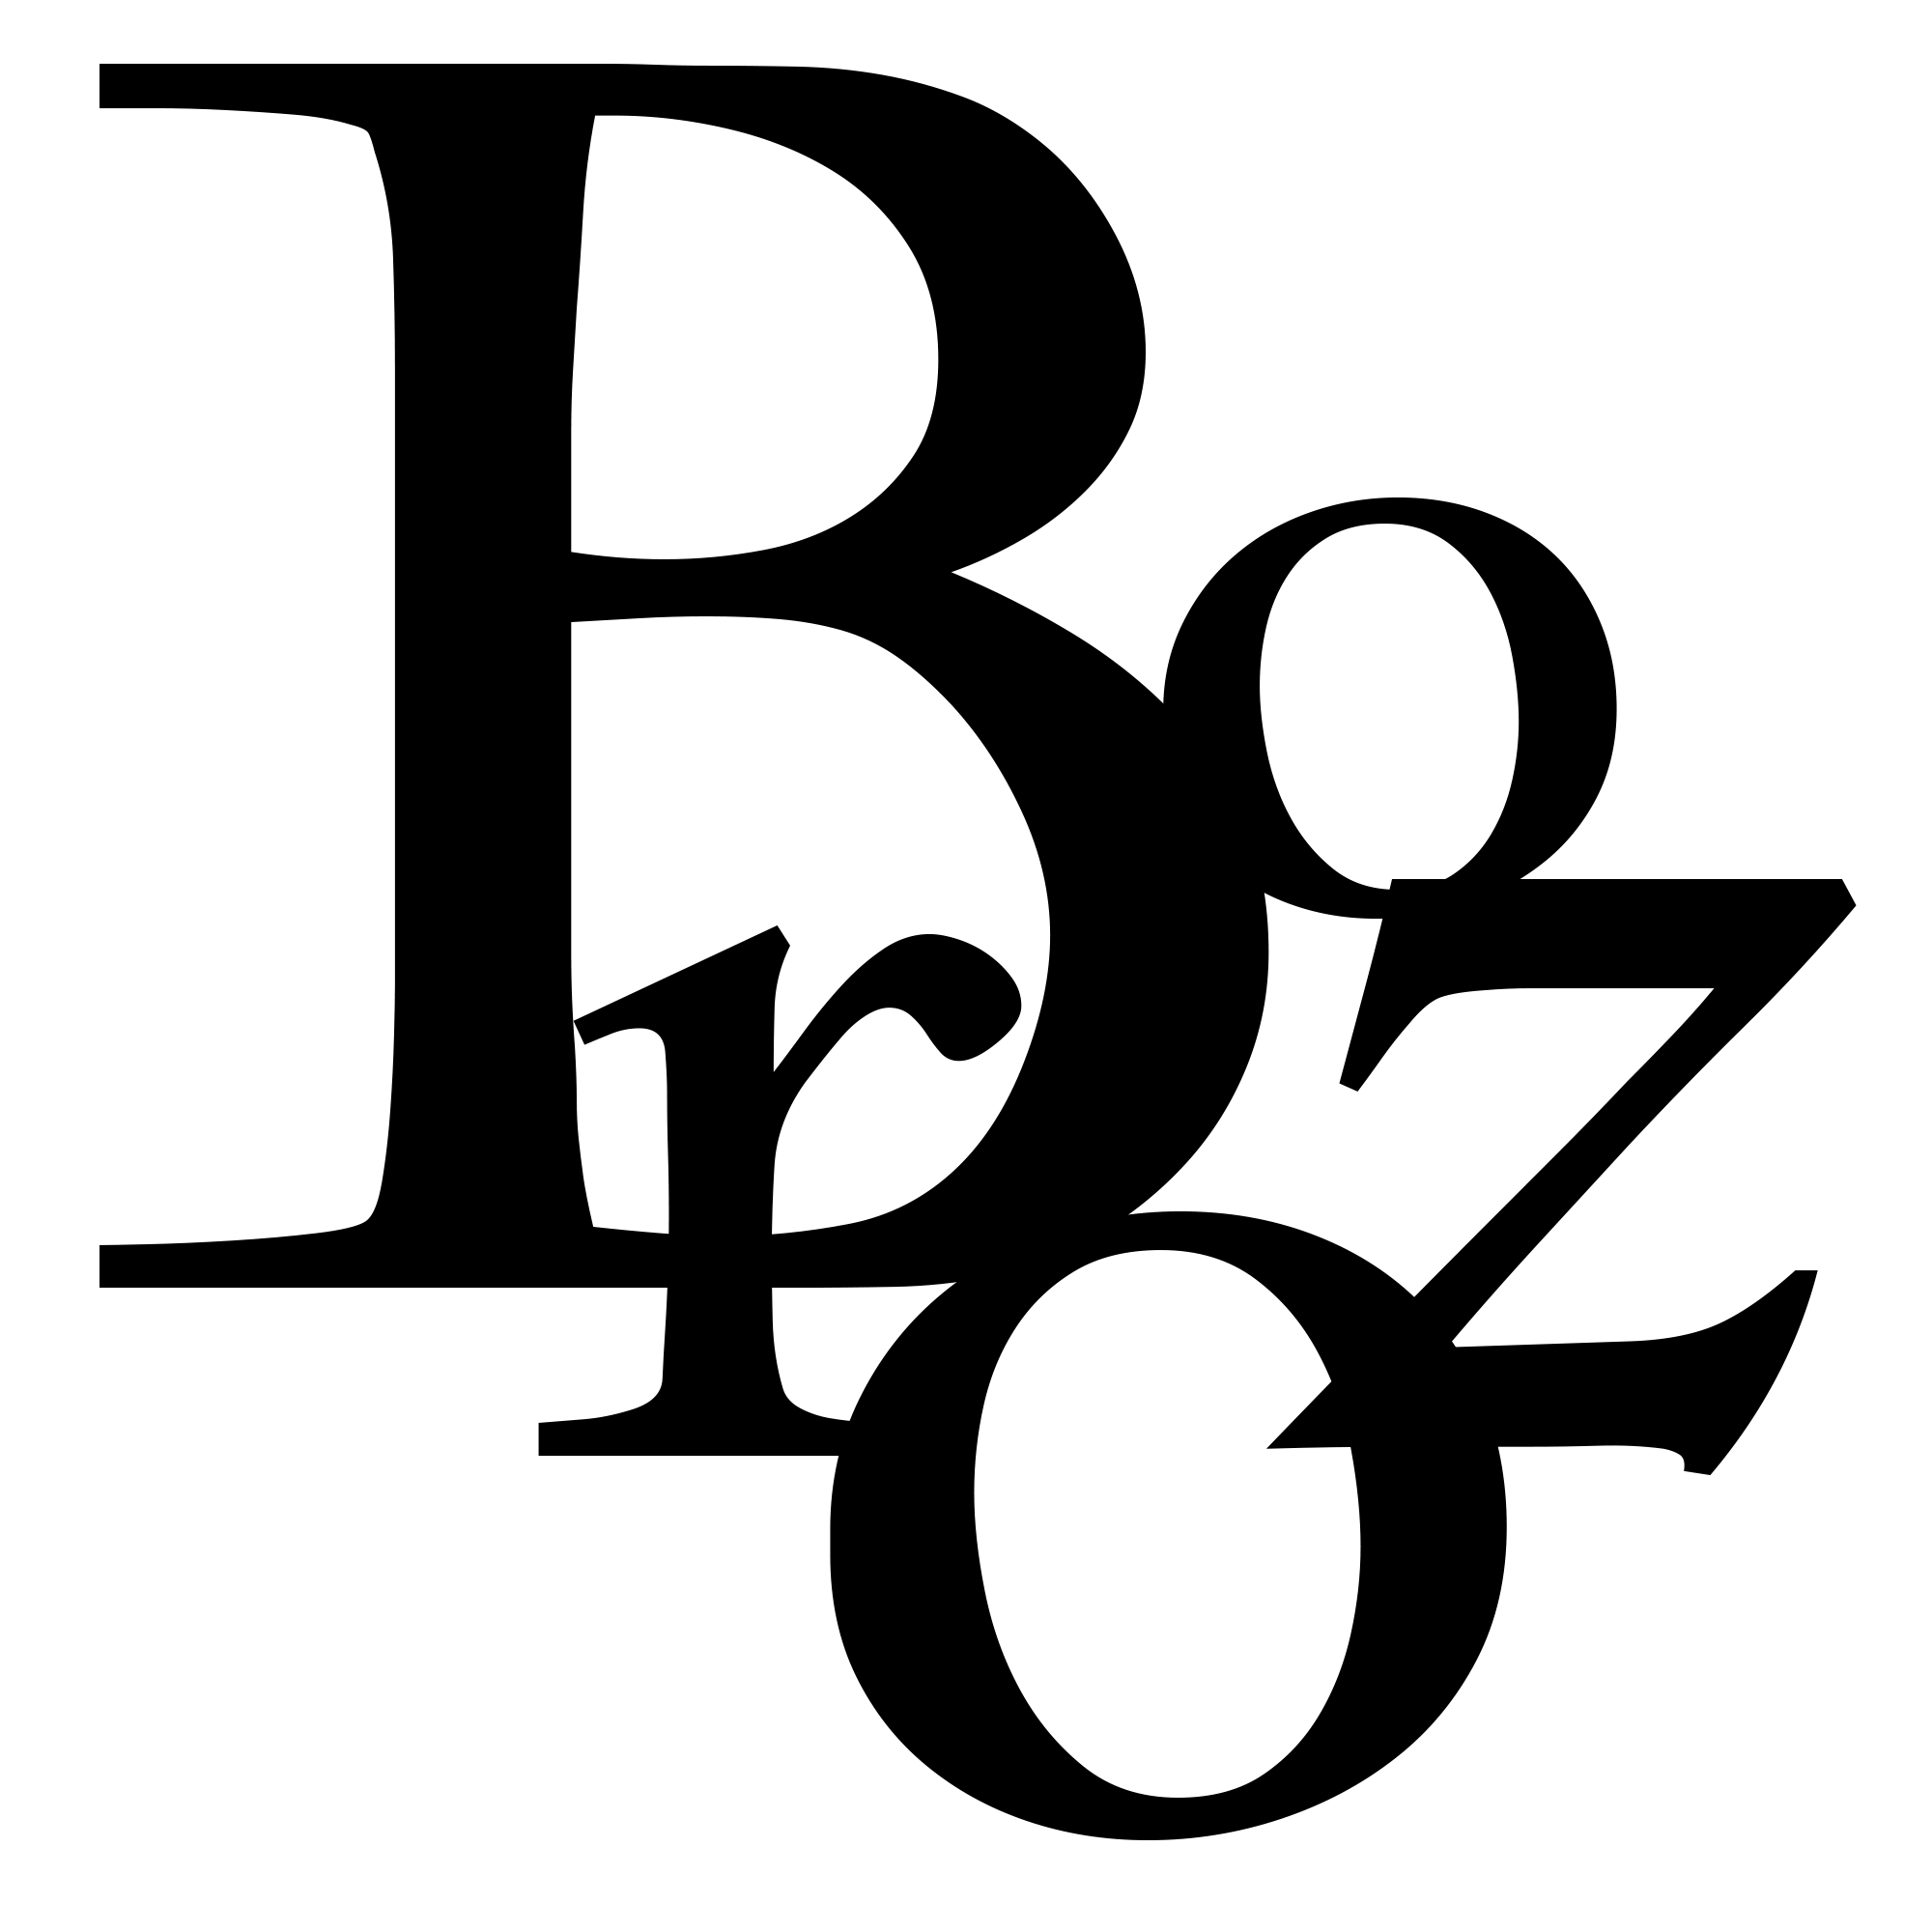 brozo-emblem-oil